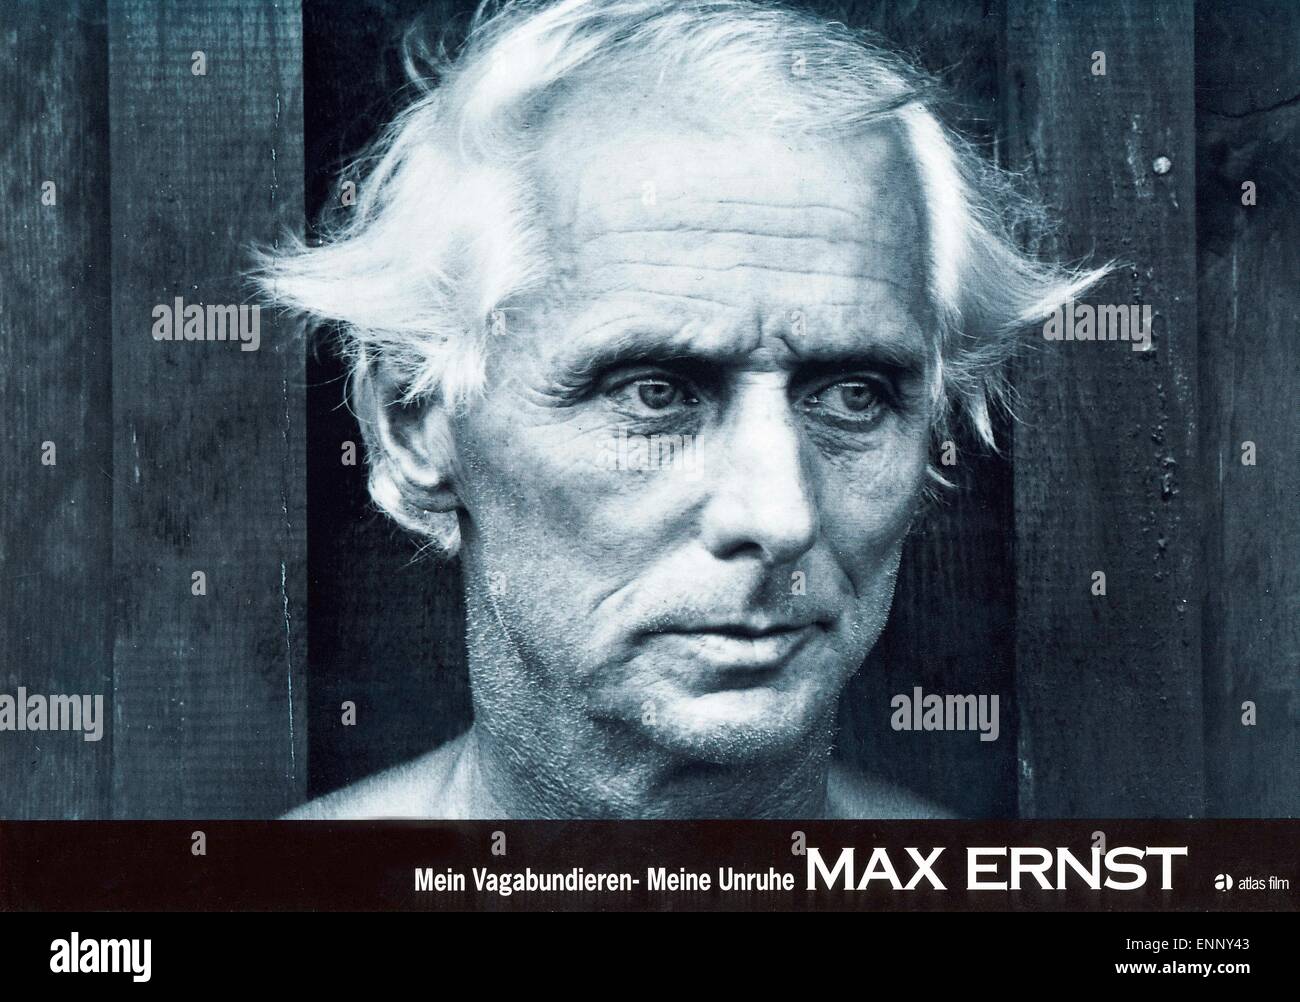 Max Ernst: Mein Vagabundieren - Meine Unruhe, Deutschland 1991, Regie: Peter Schamoni, Darsteller: Max Ernst Stock Photo